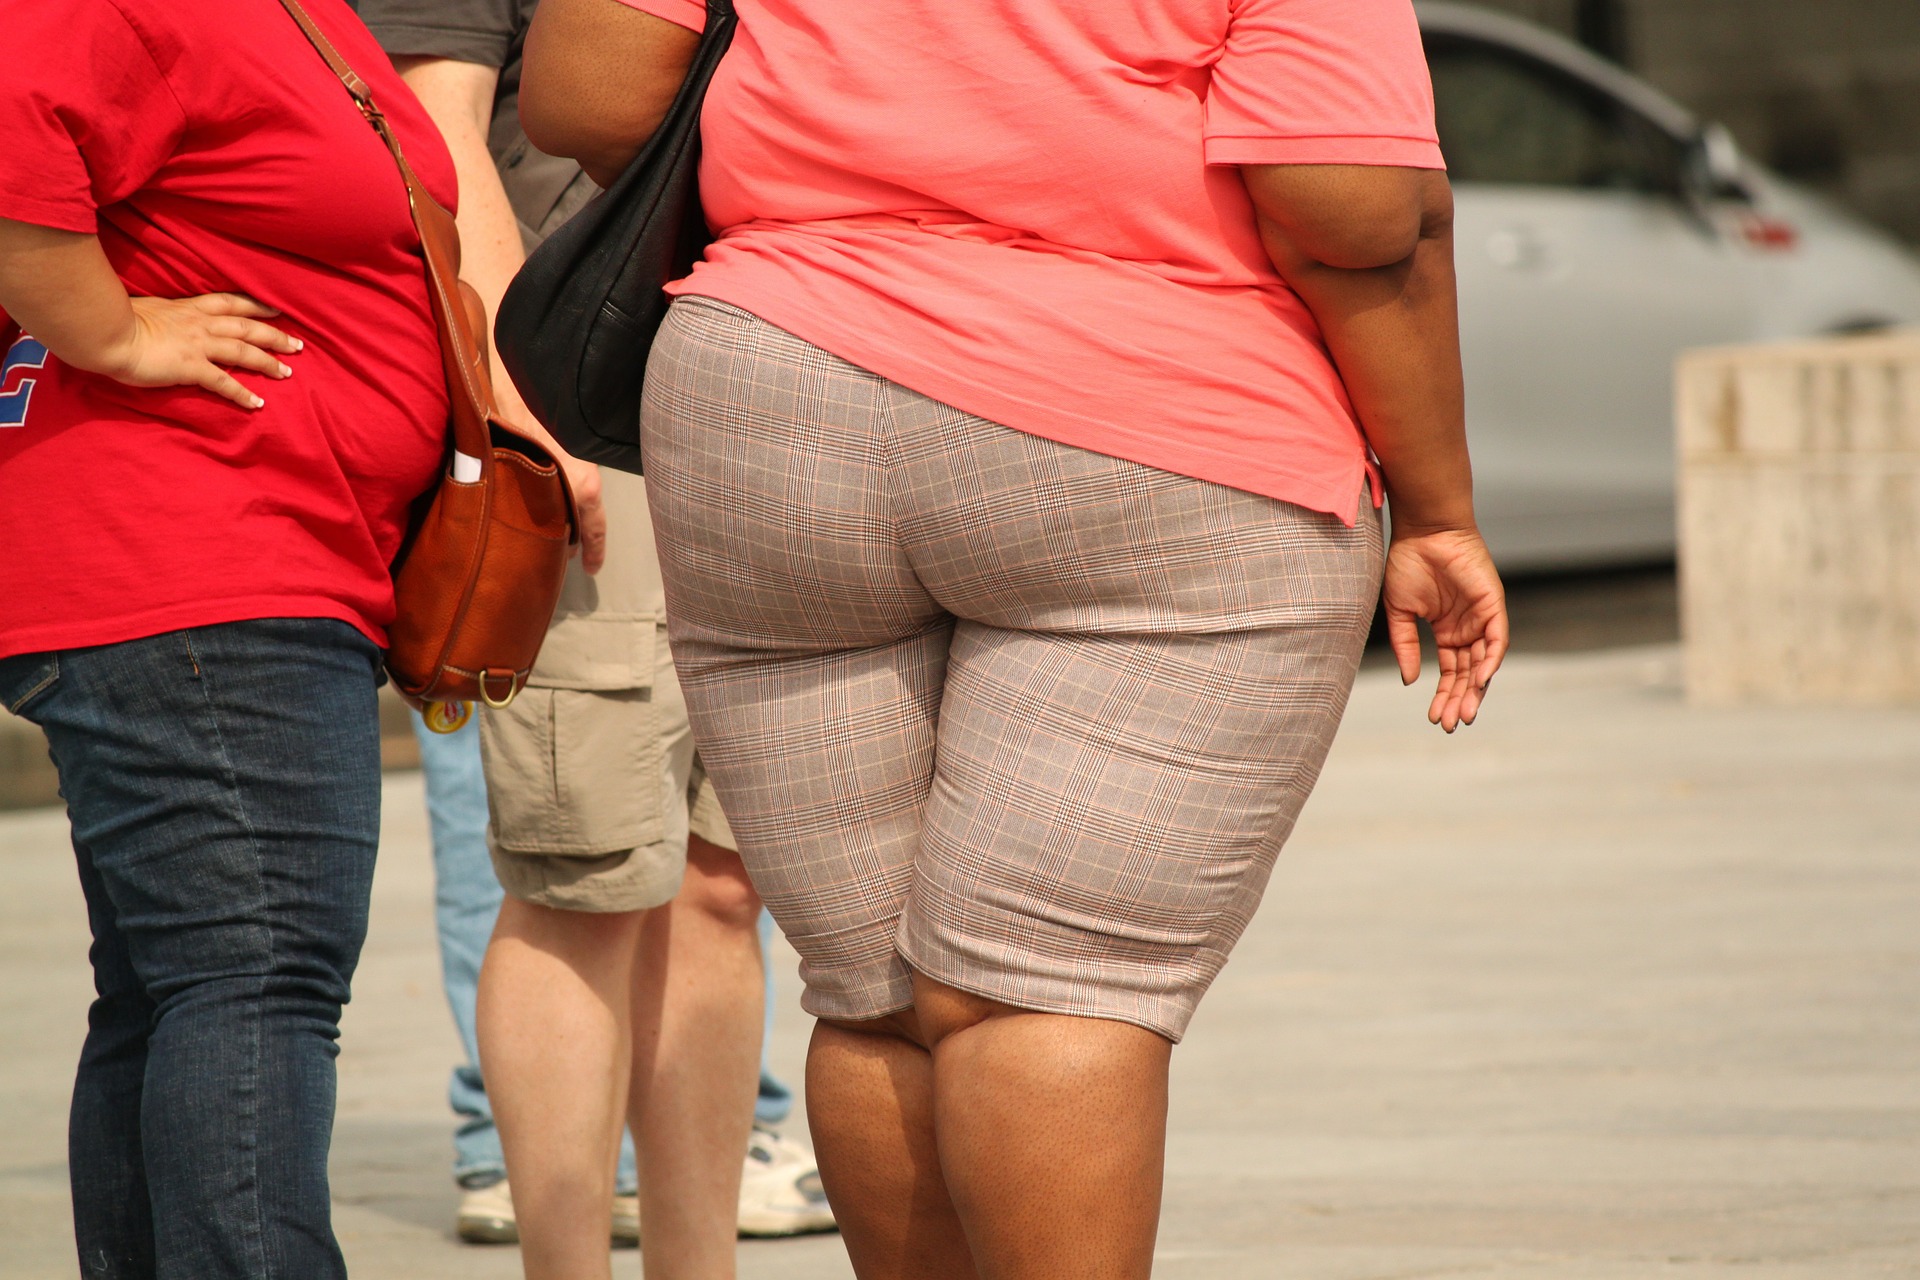 Comment diagnostiquer l’obésité ?